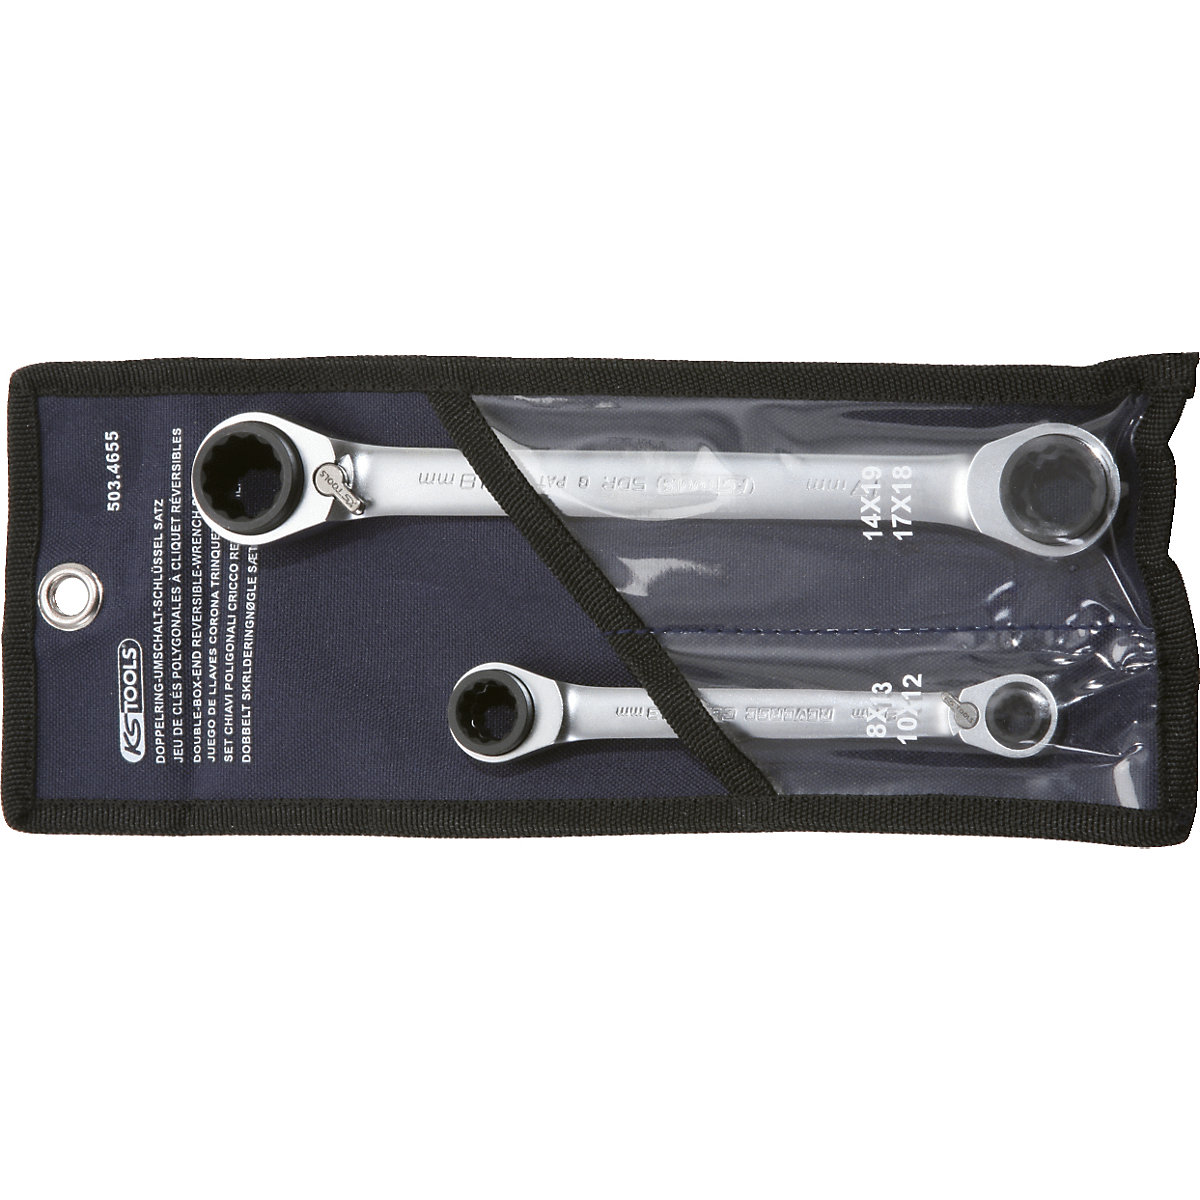 Komplet dvojnih obročastih ključev z ragljo GEARplus 4 v 1, preklopna izvedba – KS Tools (Slika izdelka 7)-6